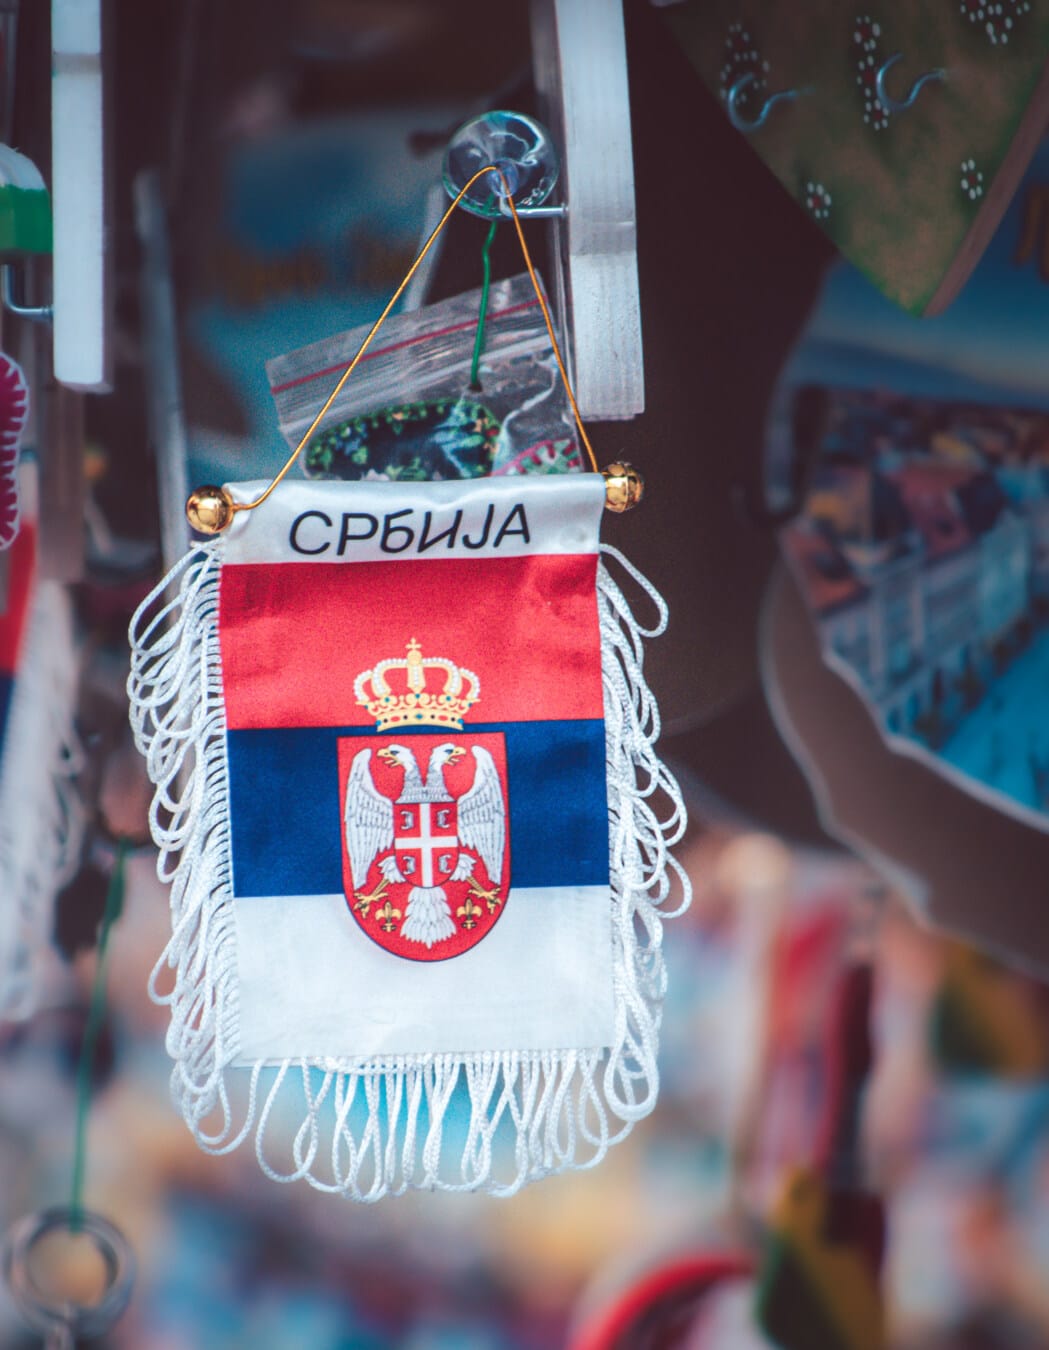 ぶら下げ, セルビア, フラグ, 記念品, 懐かしさ, 観光名所, ショッピング, 通り, 市場, 伝統的です